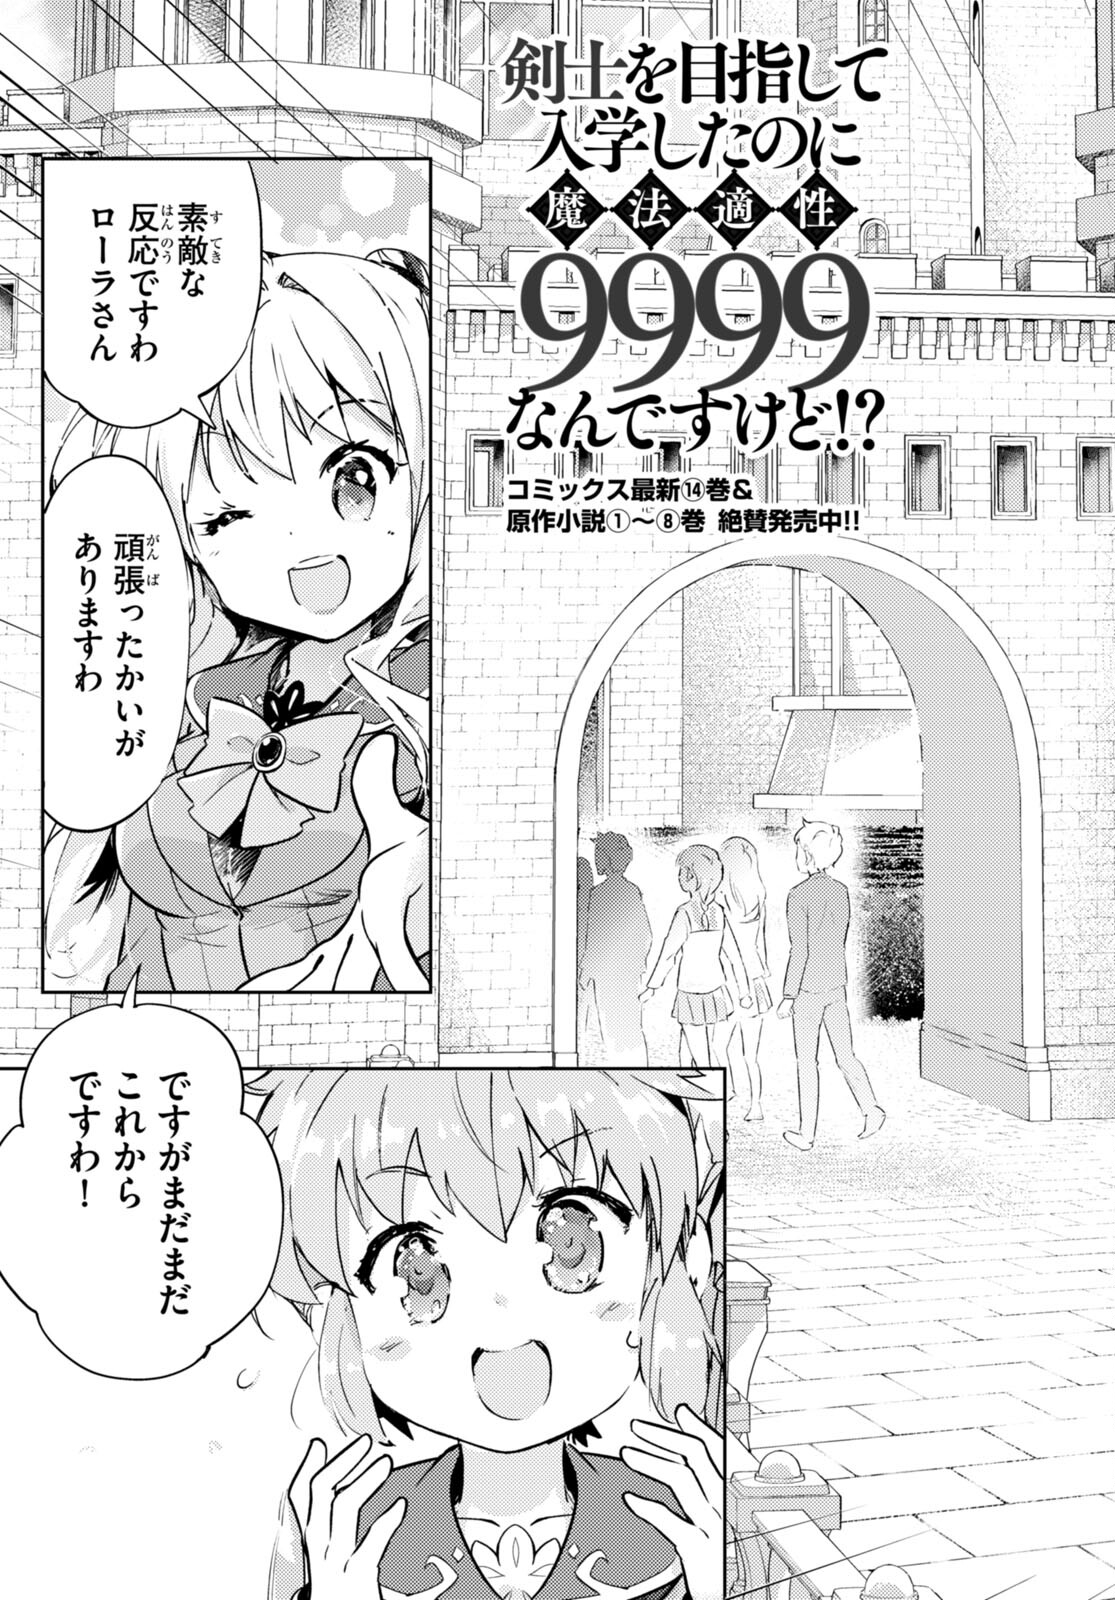 Kenshi o Mezashite Nyugaku Shitanoni Maho Tekisei 9999 Nandesukedo! - Chapter 74 - Page 3